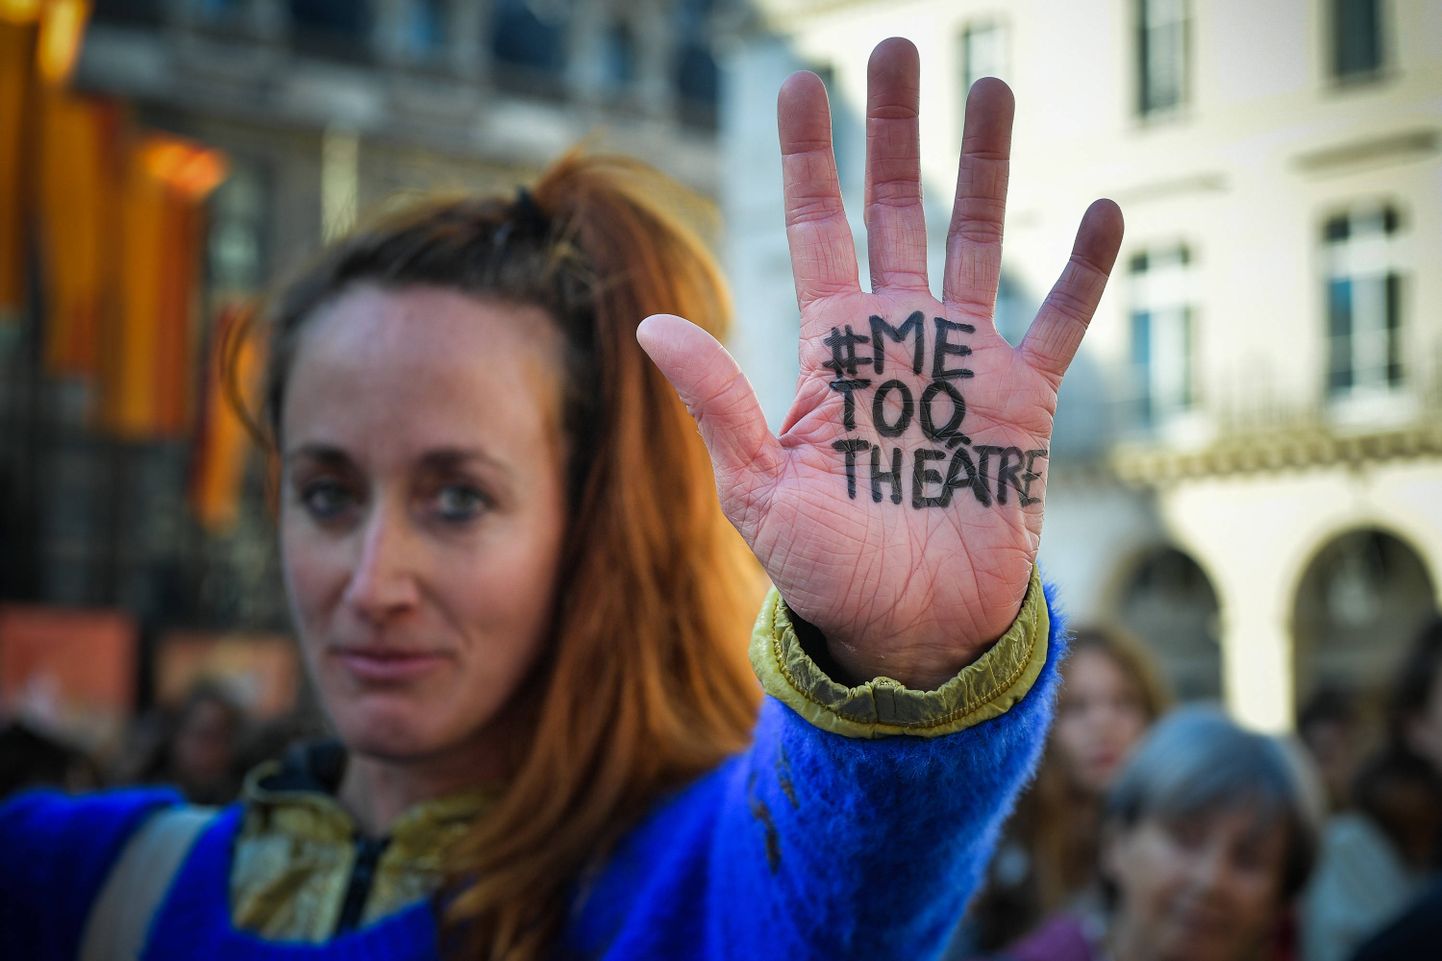 Nädalavahetusel avaldas mitusada teatriga seotud inimest Pariisis meelt ärakasutamiskultuuri vastu. Viimasel ajal on Prantsusmaal ilmsiks tulnud rida teatrikeskkonnas toimunud seksuaalse vägivalla juhtumeid.